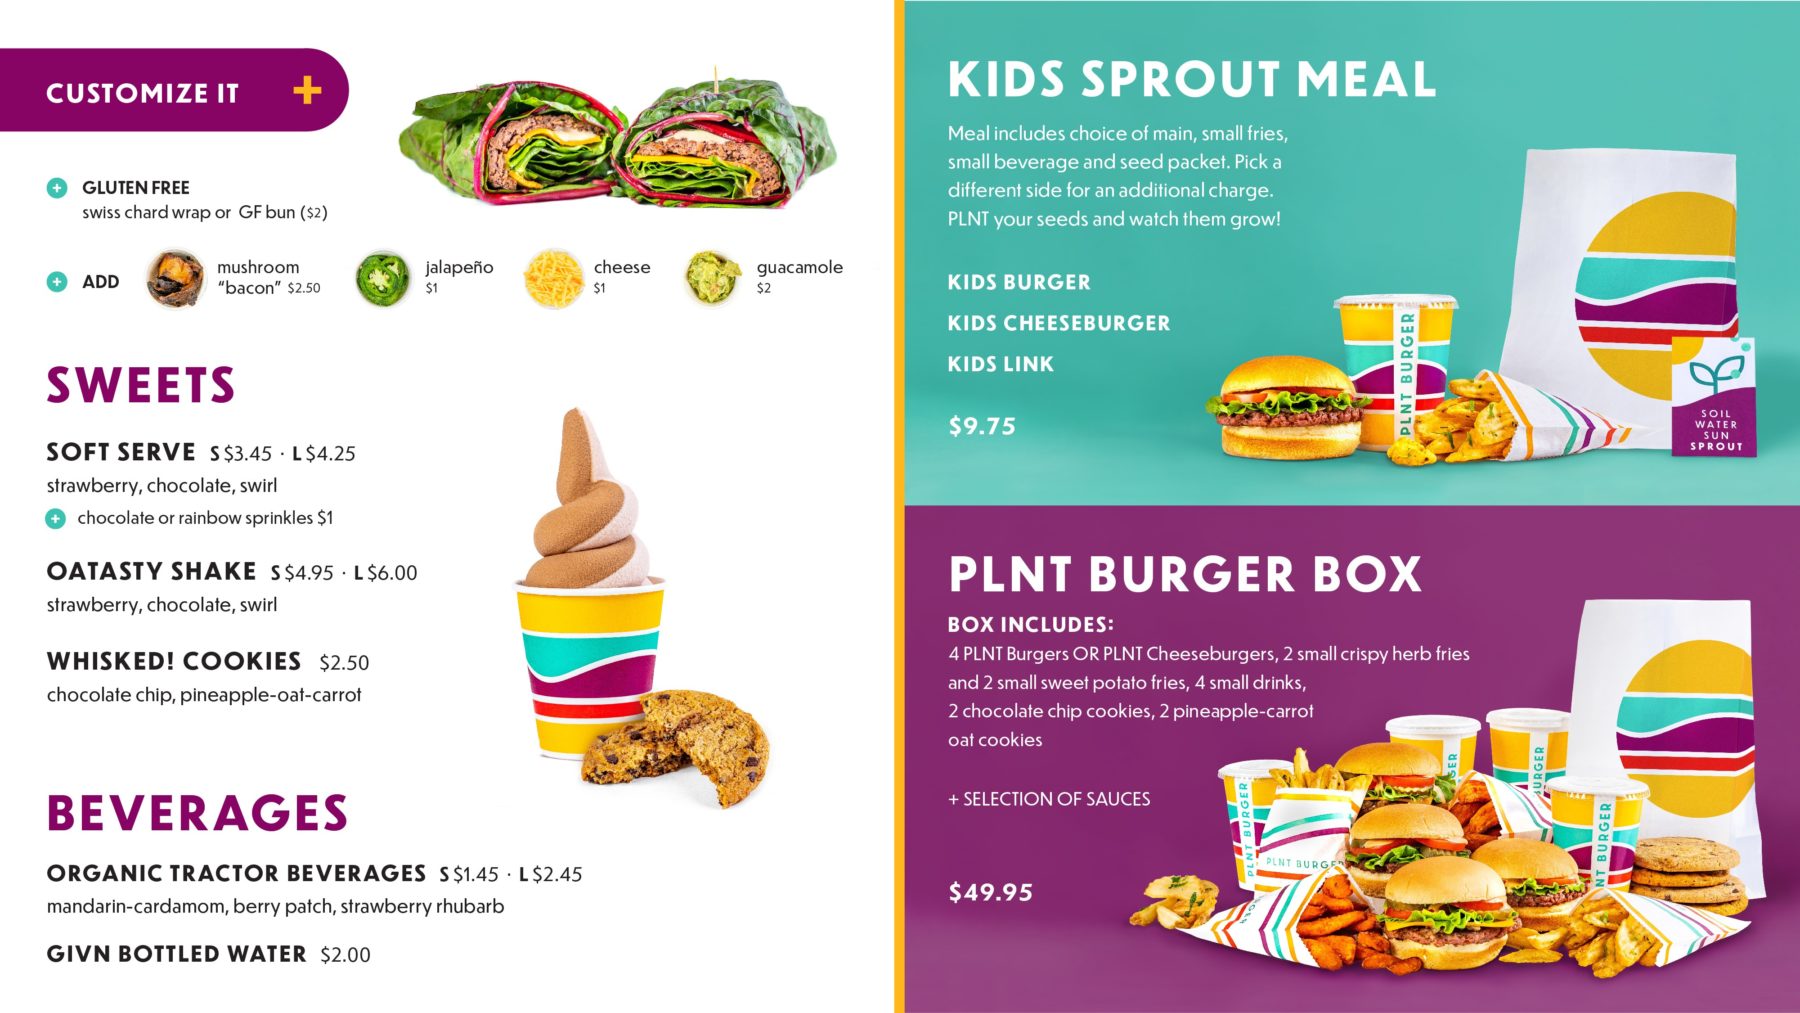 Image of PLNT Burger's Menu, including Sweets, Beverages, Kid's Meal, and PLNT Burger Box